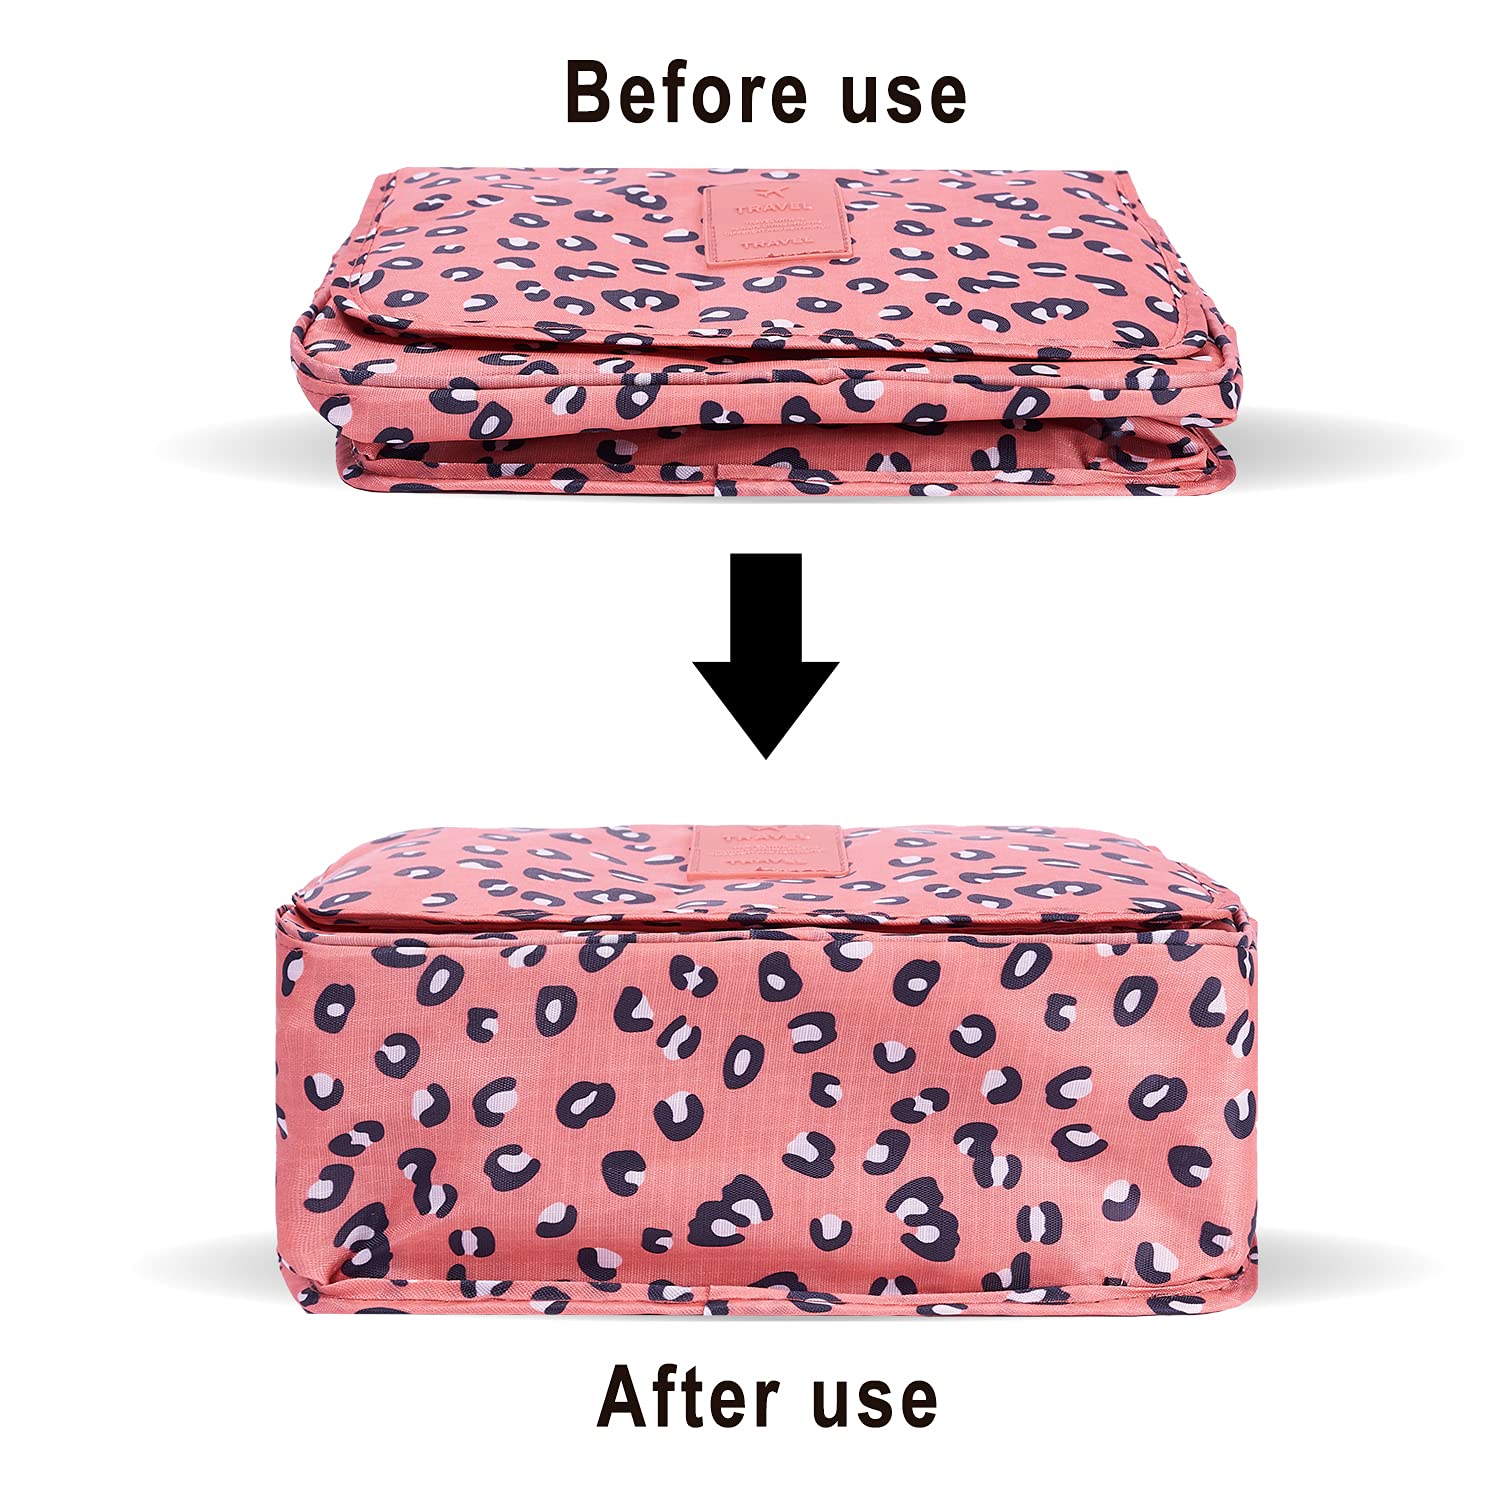 TxoLIFE Cosmetic Makeup Bag Case Hanging Toiletry Bag Travel Organizer Travel Kit for Women Men Pink Leopard